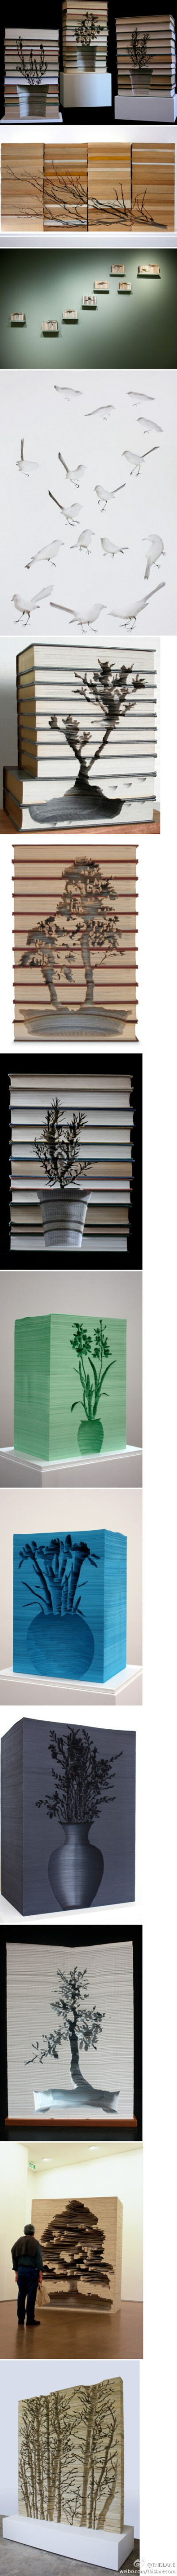 来自墨尔本的雕刻家Kylie Stillman利用书纸，雕刻出这一些列令人惊叹的艺术作品，惊喜的雕刻工艺加上令人震撼的表现形式，以及作品背后的深意——书本来源于植物，带有环保概念的作品更加值得欣赏！